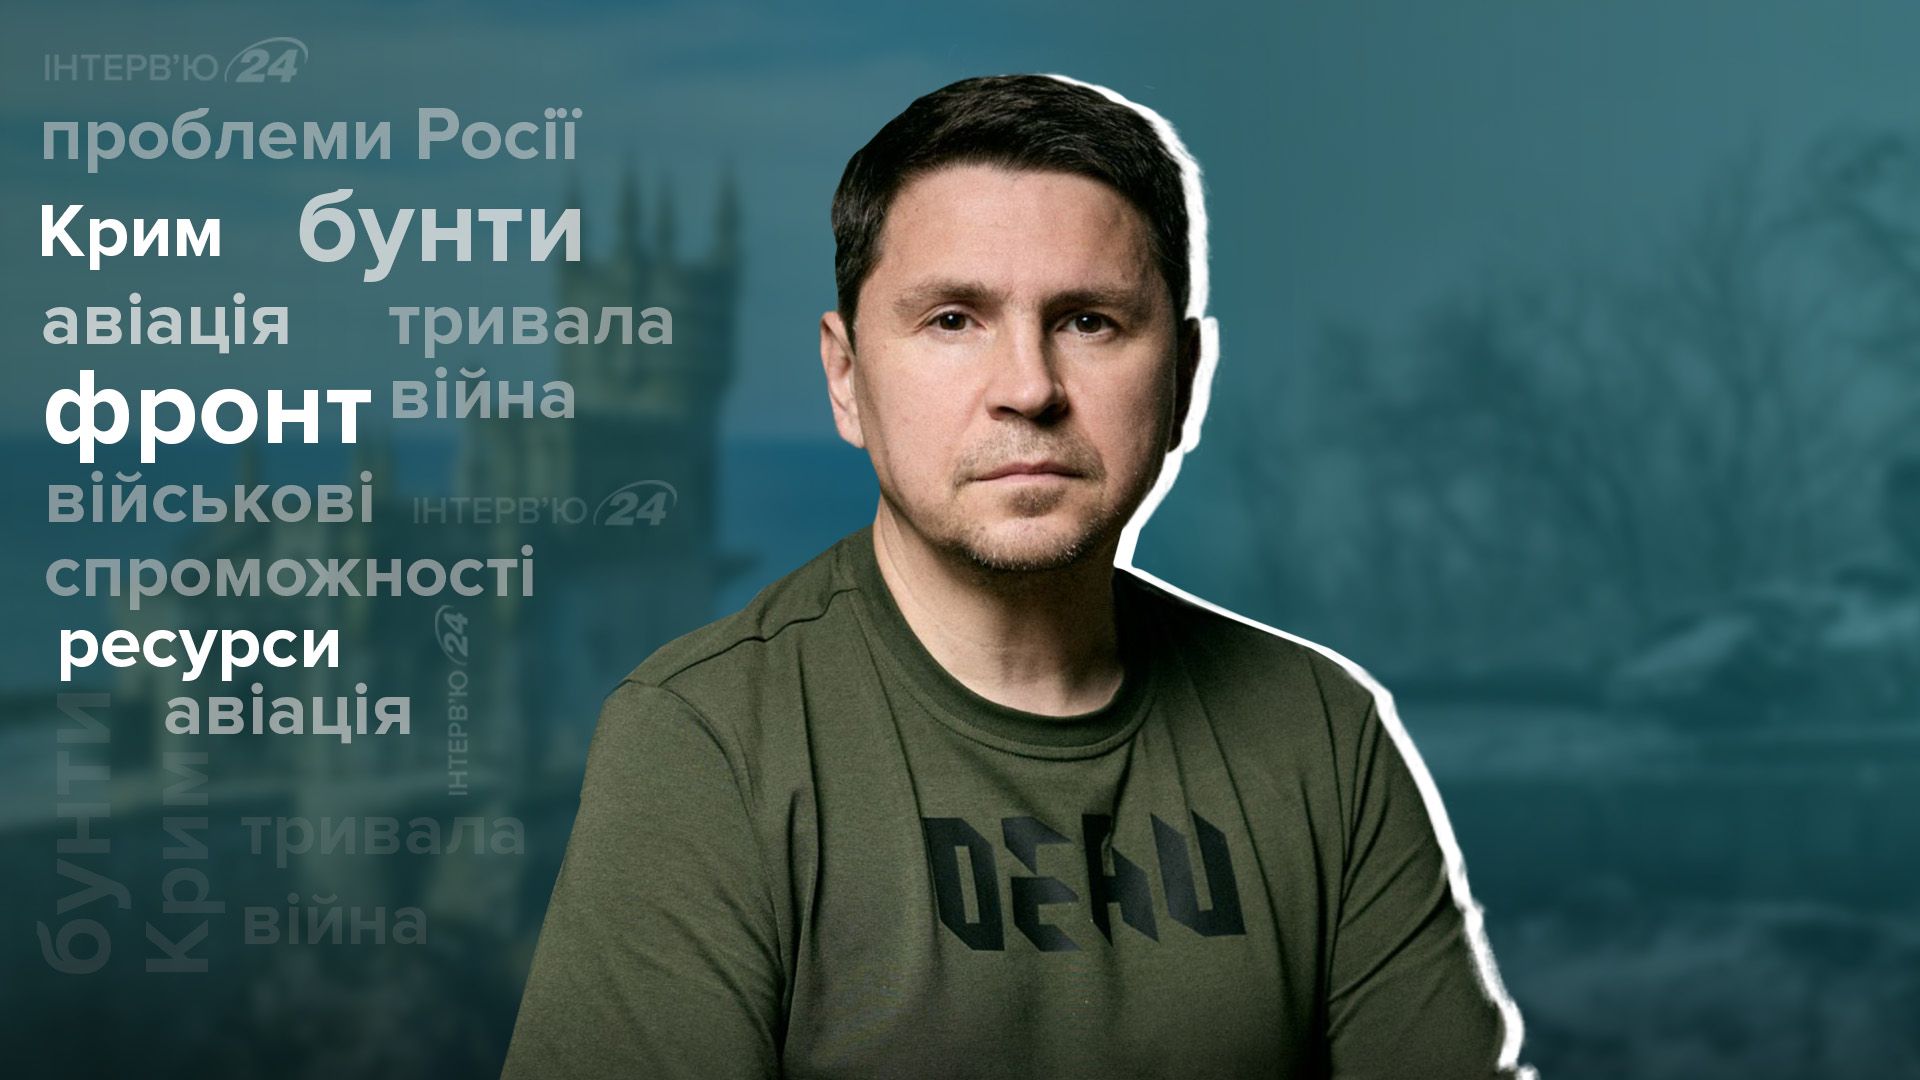 Протесты в России - Подоляк сказал, что ускорит разрушение России - интервью - 24 Канал